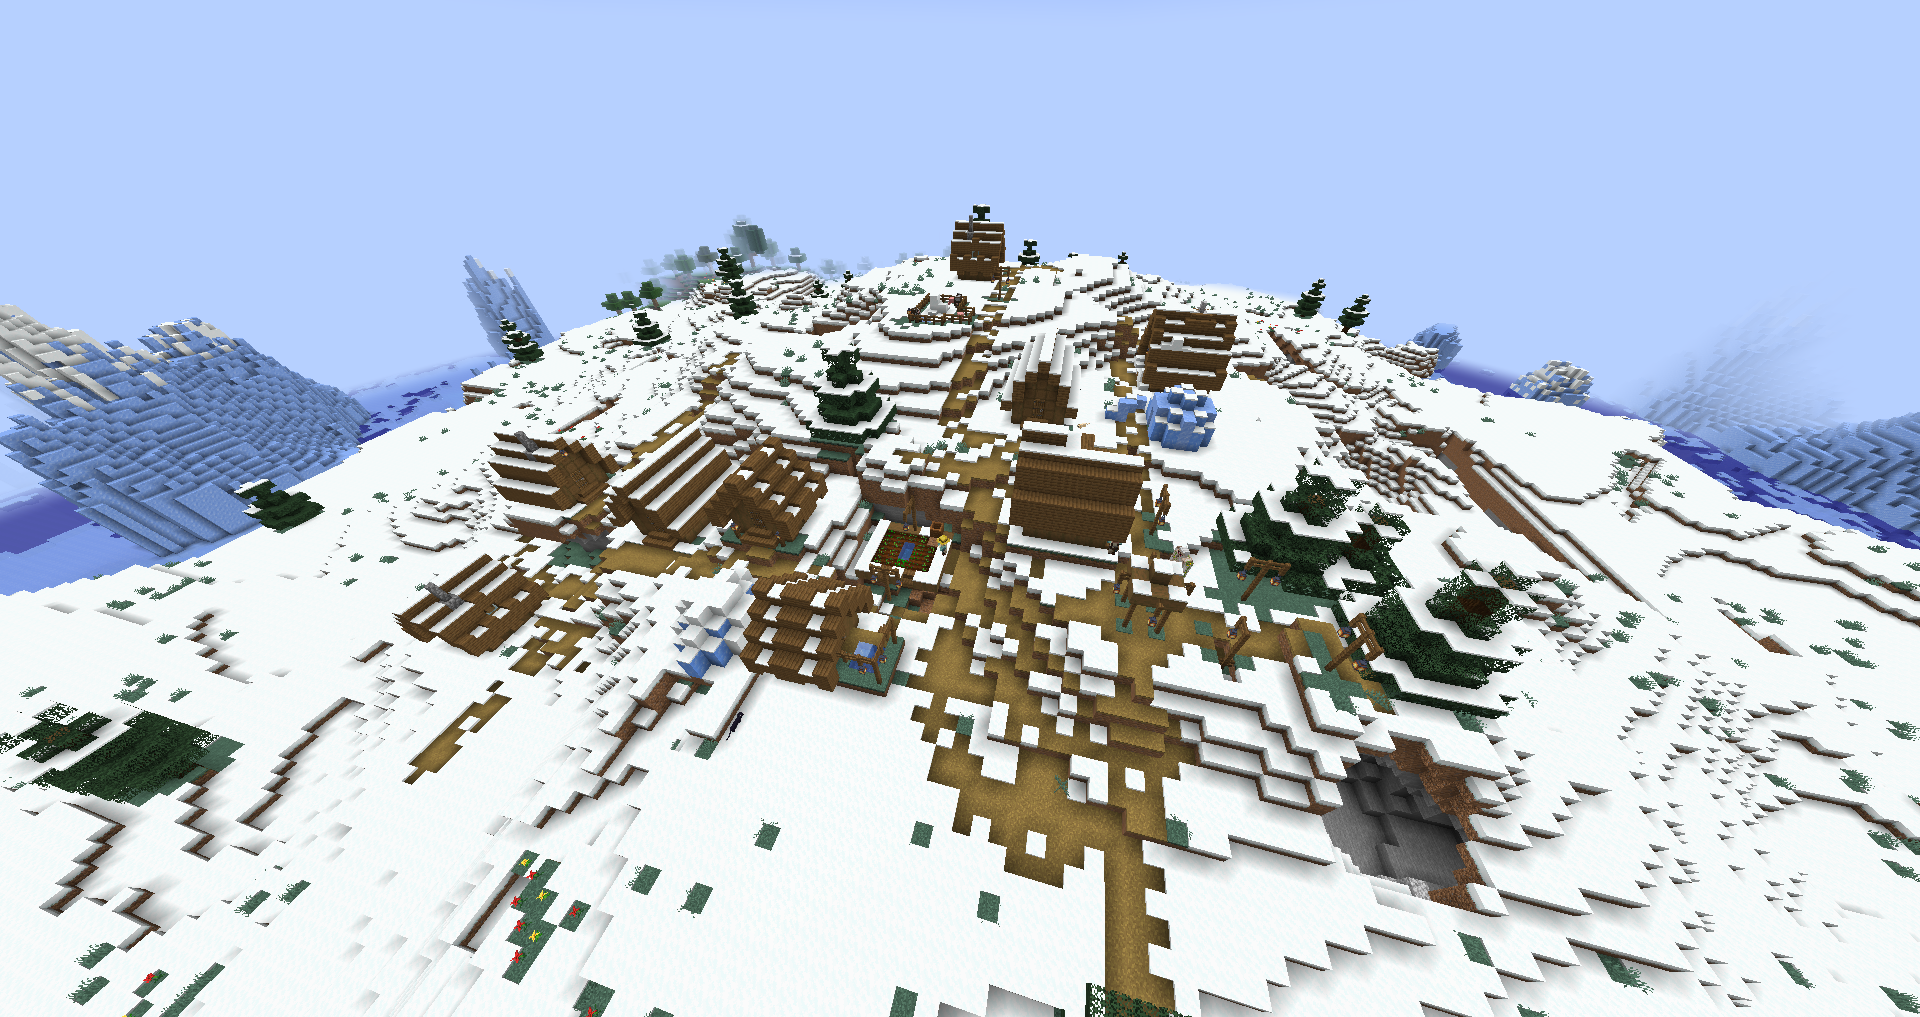 Minecraft Winter Village Seed